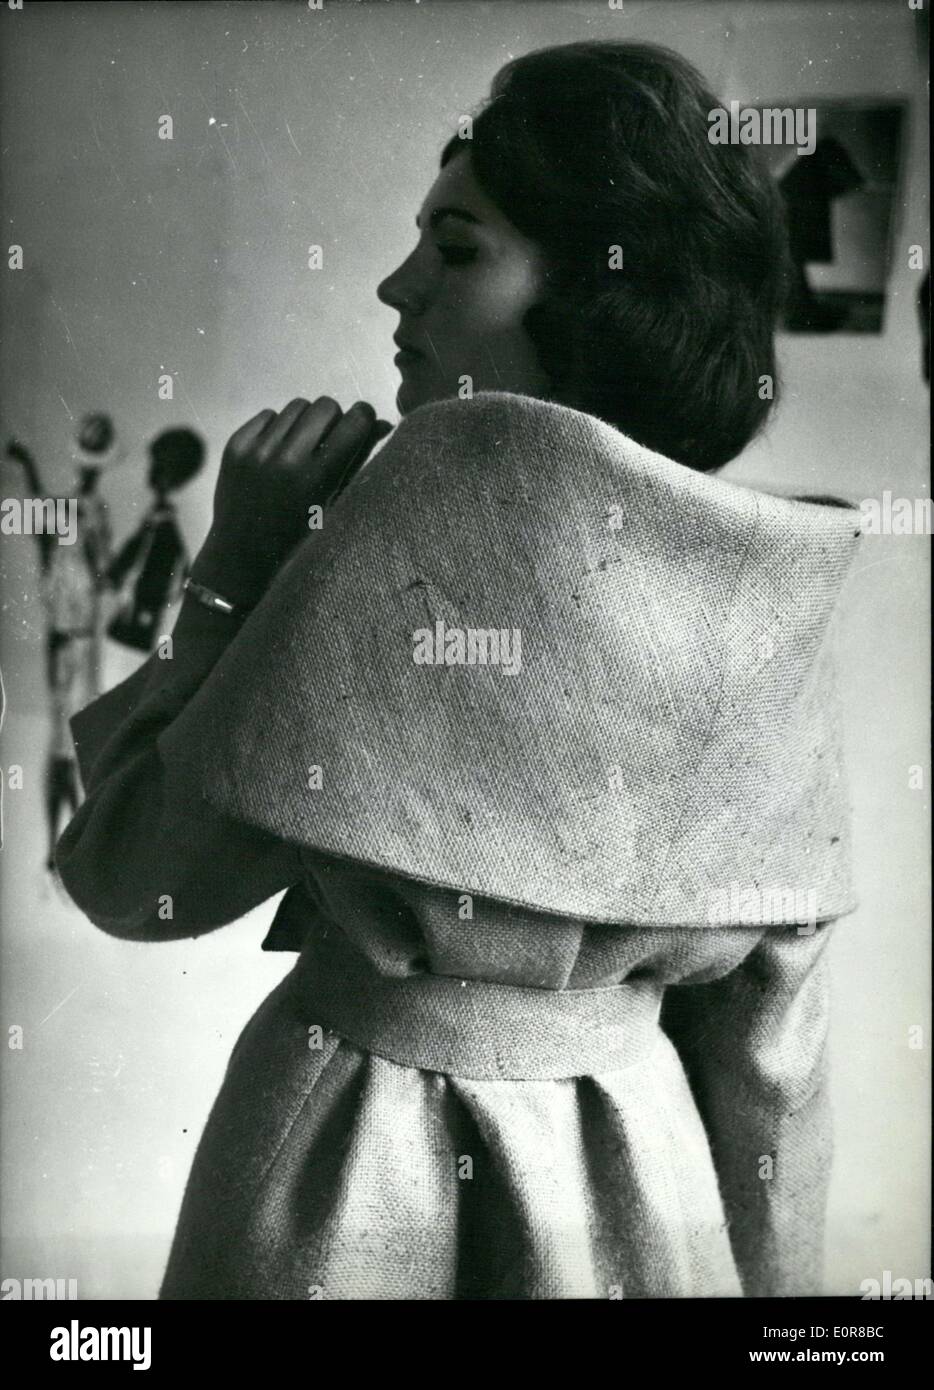 Lug. 30, 1958 - stilisti francesi appena introdotto molti disegni che moda donna indosserà la prossima stagione. Qui è un rivestimento con un grande collare che può essere convertito in un piccolo promontorio. Foto Stock